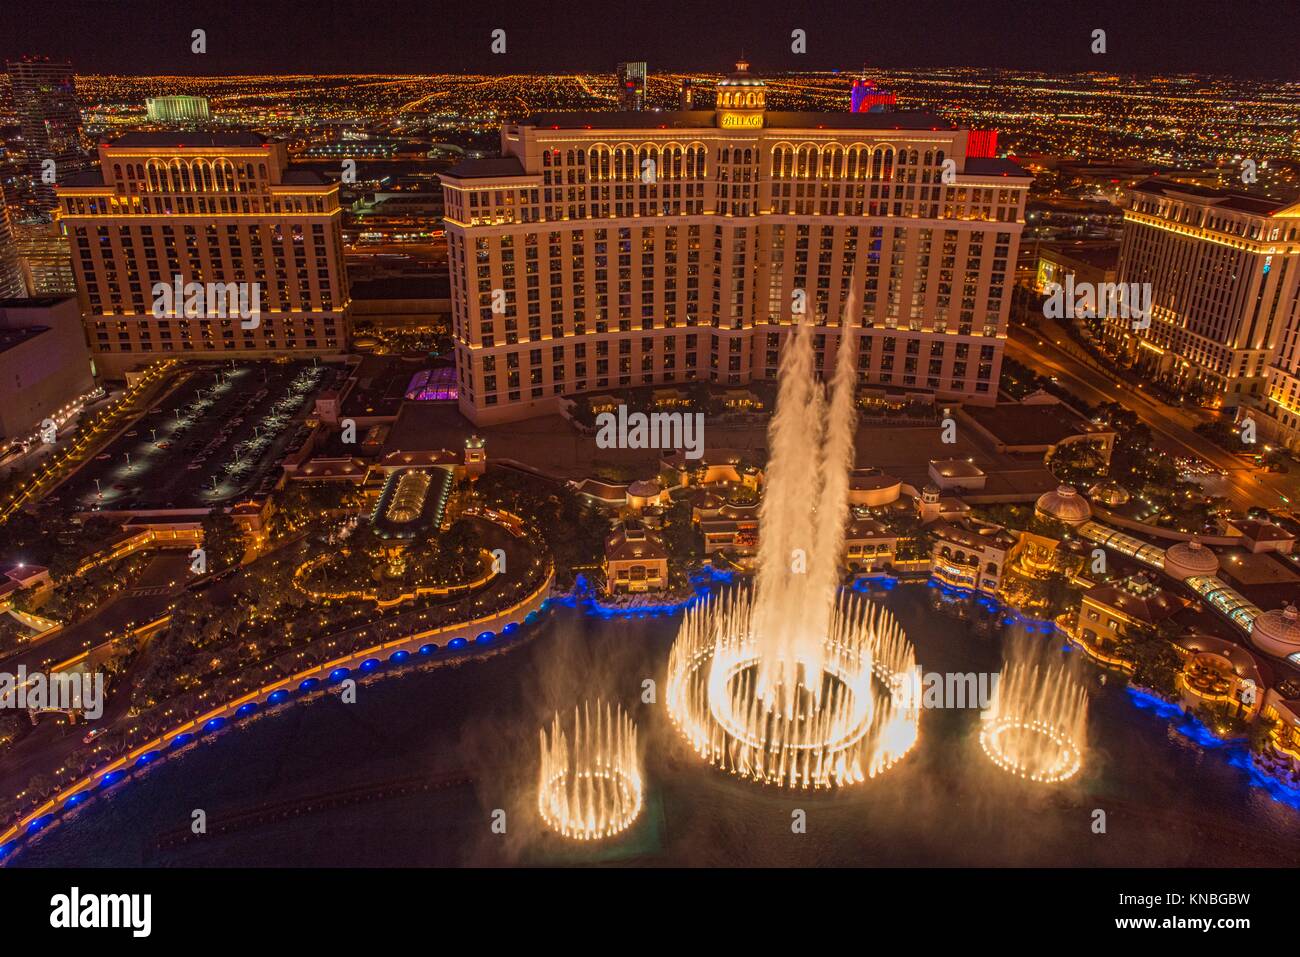 Las Vegas bei Nacht aus dem Paris Casino Resort Hotel Eiffelturm - Bellagio Hotel und Brunnen, Las Vegas, Nevada, USA. Stockfoto